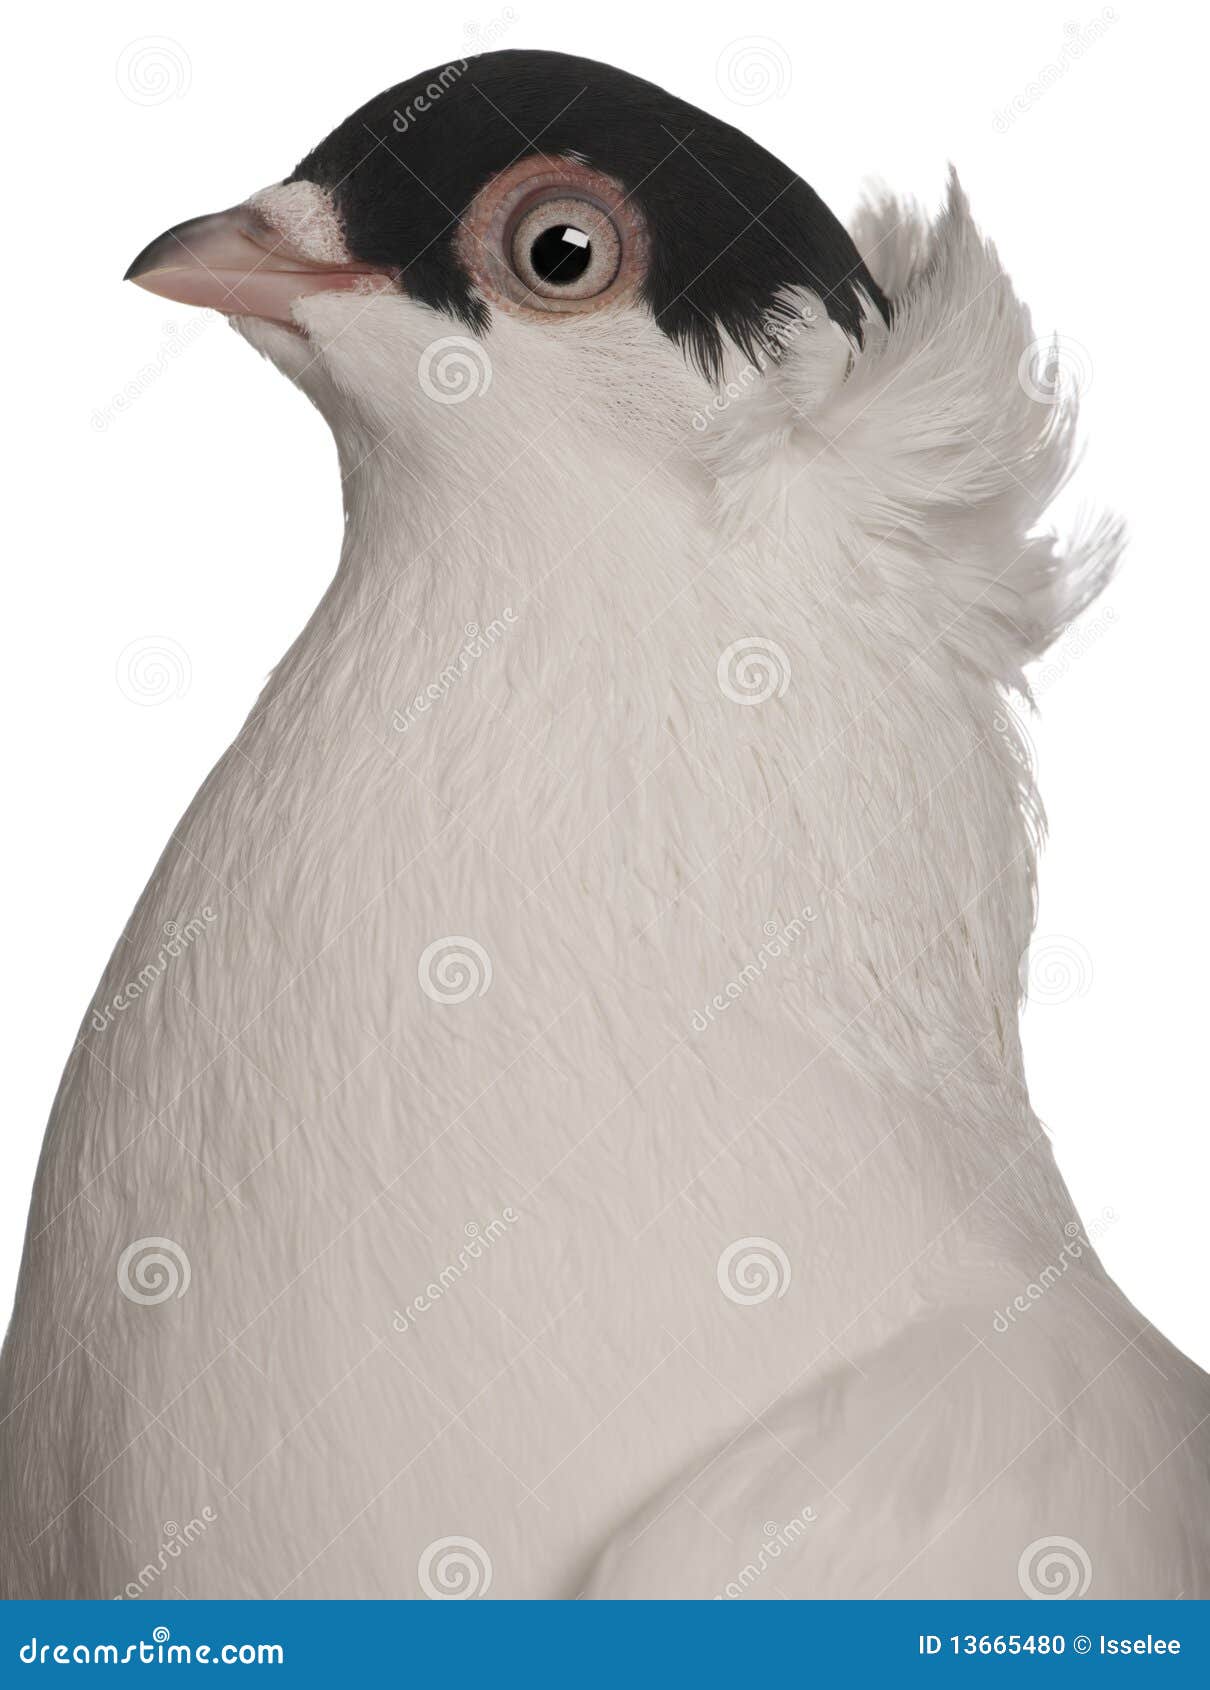 kryska polska, a breed of fancy pigeon